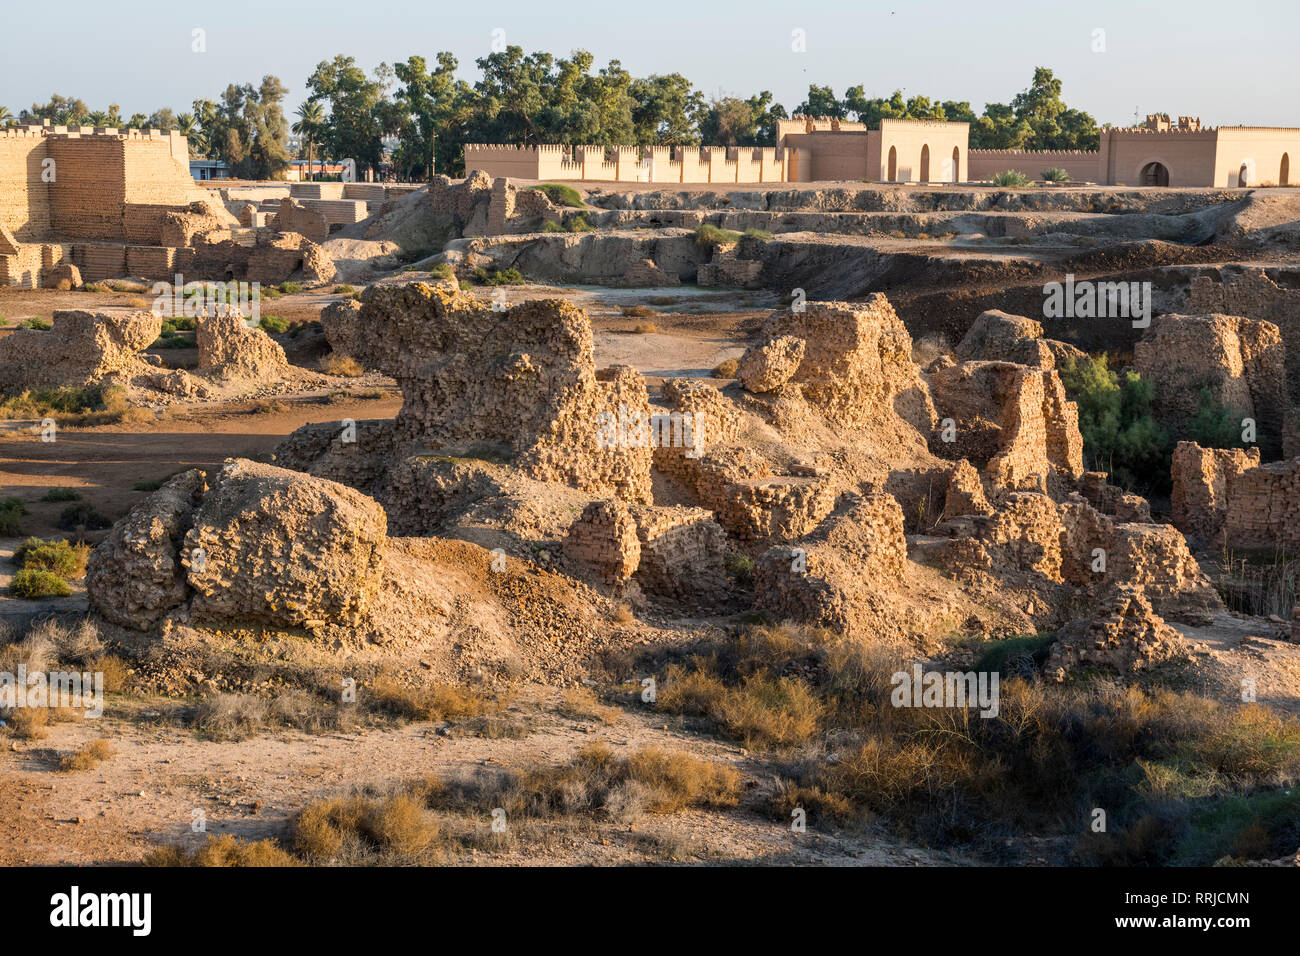 Les structures en briques anciennes, Babylone, Iraq, Middle East Banque D'Images